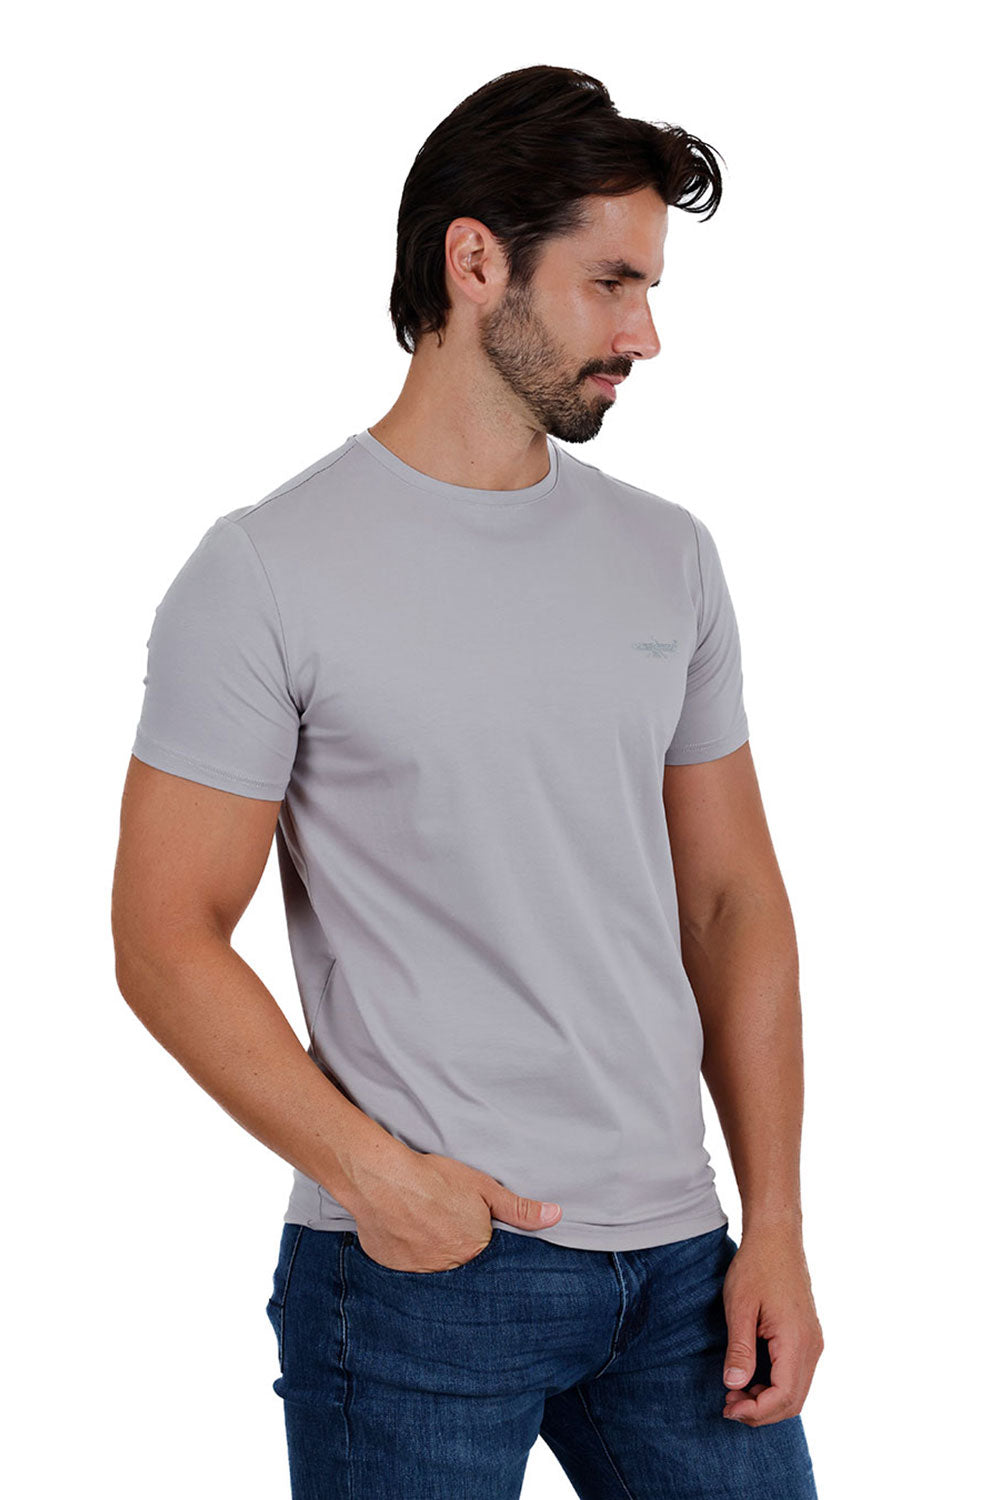 BARABAS Men's Basic Solid Color Crew-neck T-shirts ST933 Grey